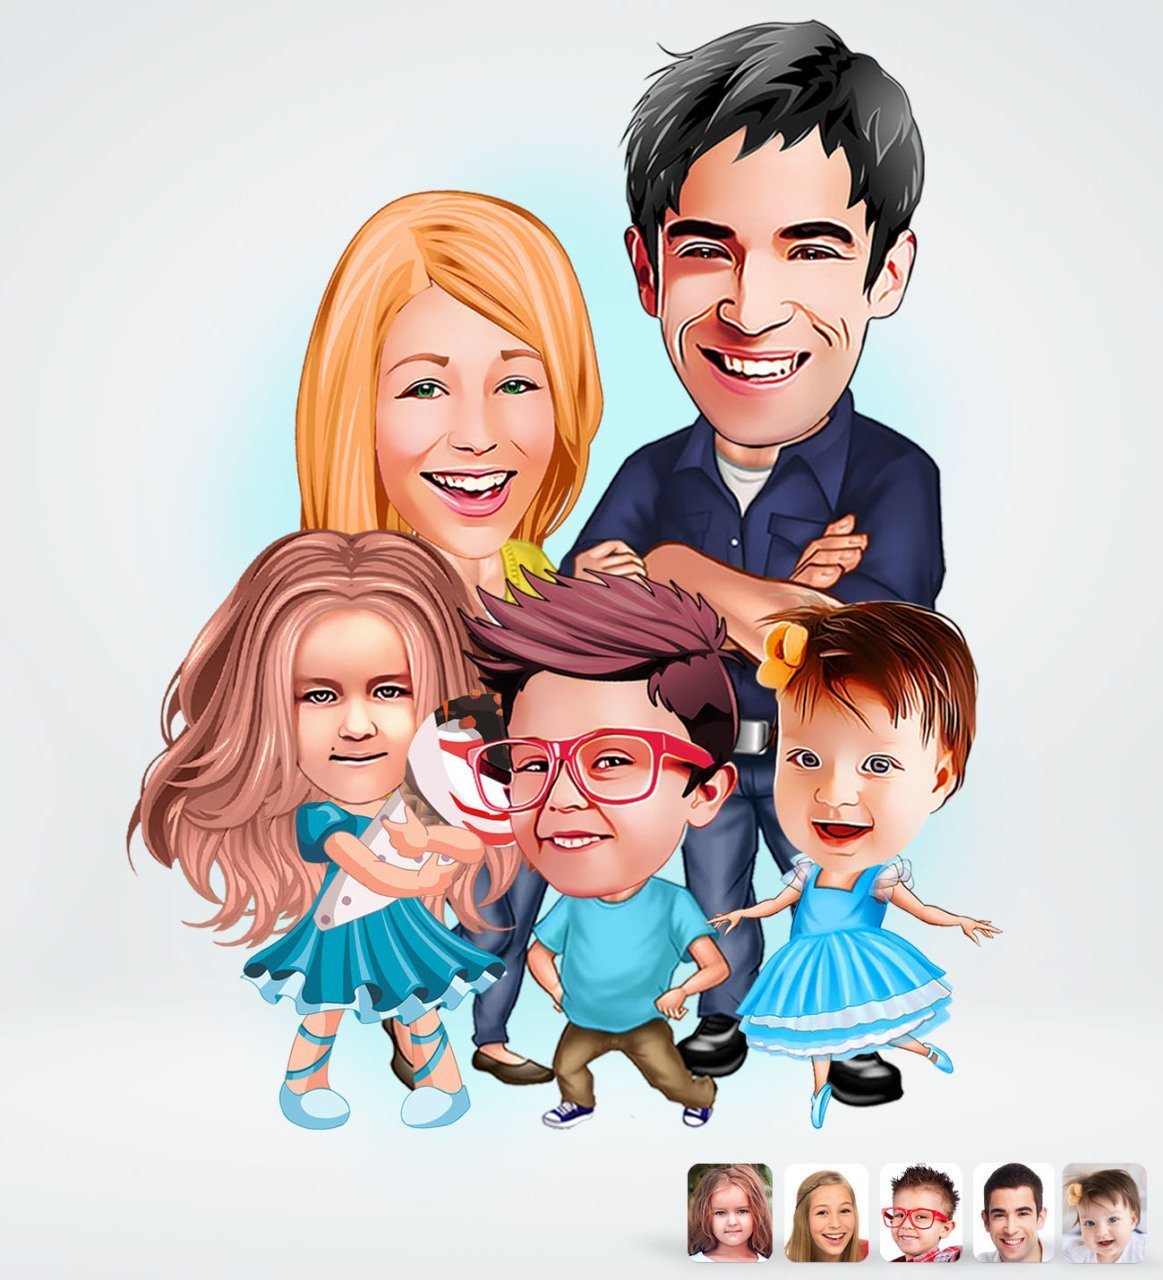 Familie tema5 (5 personer) - karikaturtegning efter dine fotos